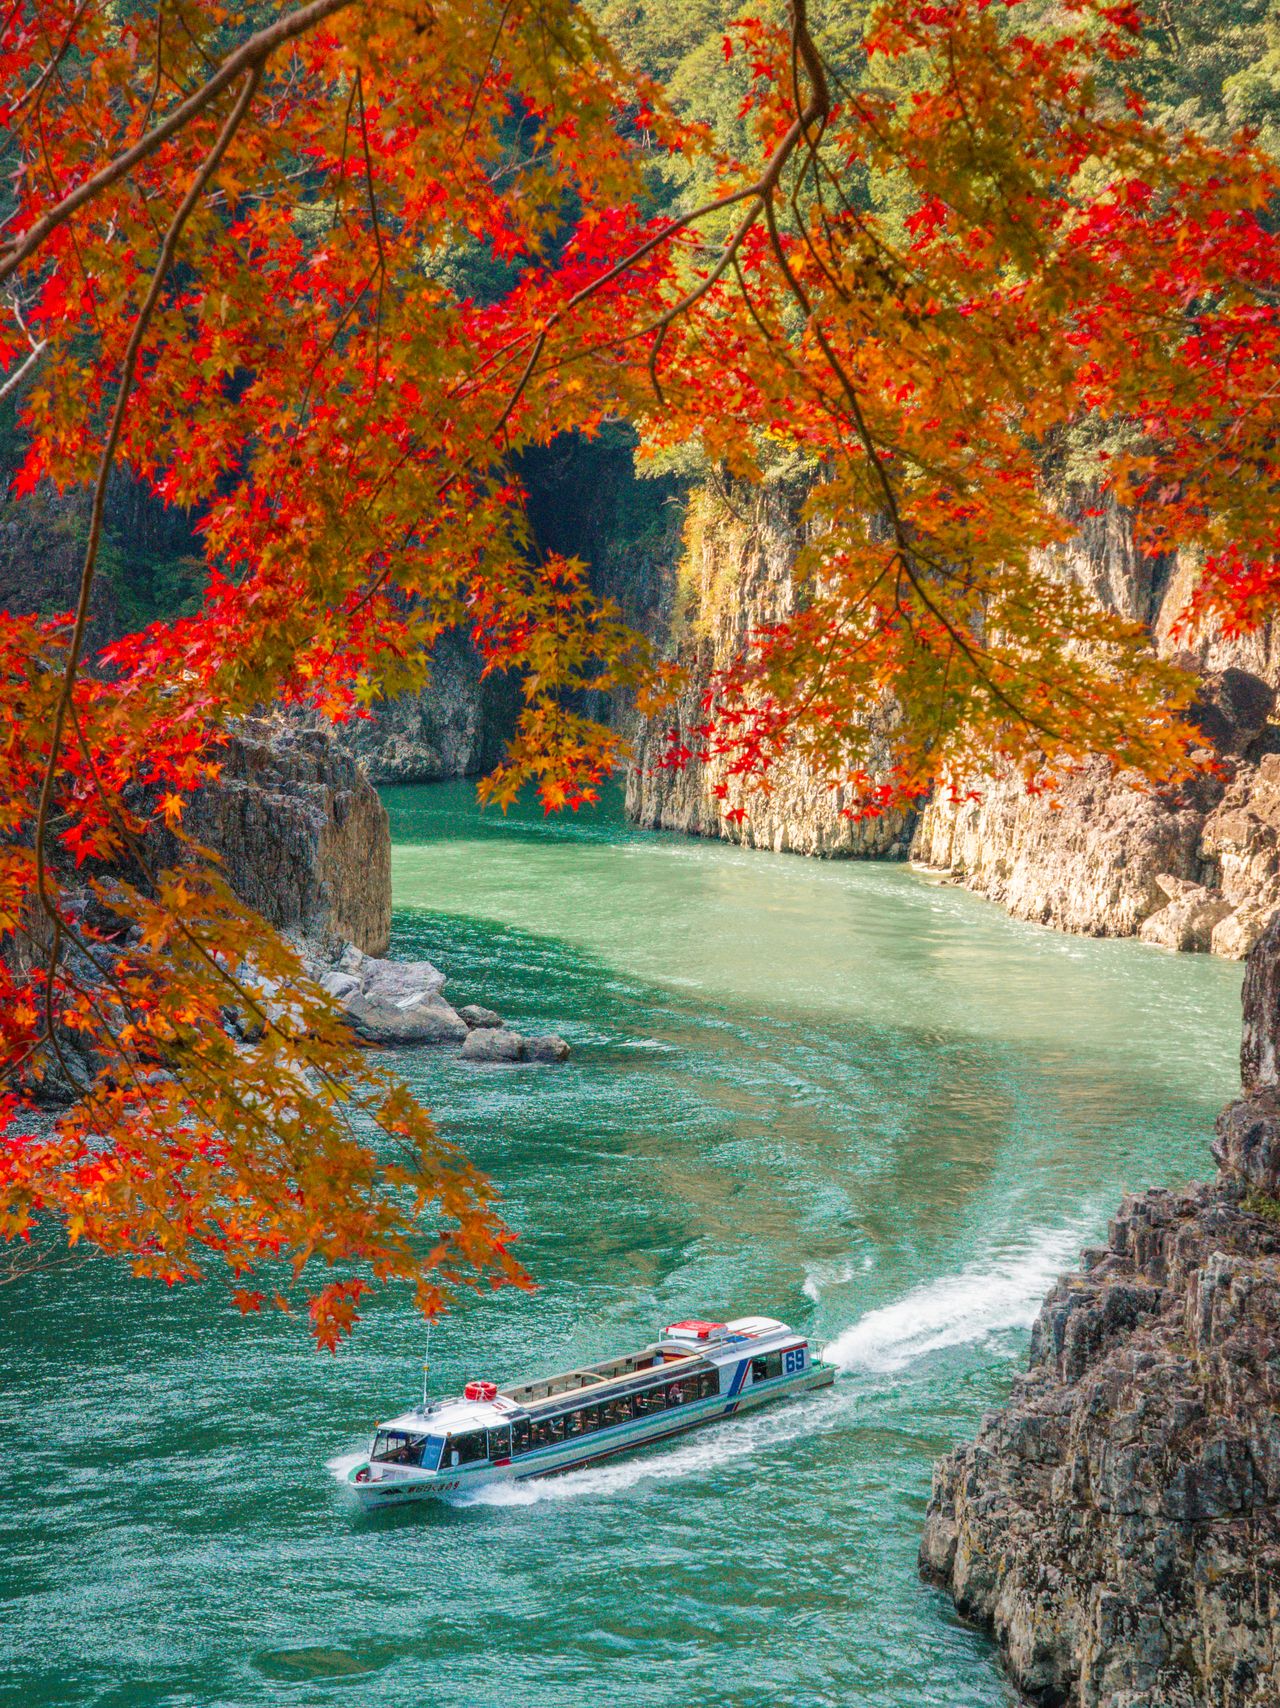 Tour boat and autumn foliage at Doro Gorge. (Courtesy Wakayama Tourism Federation)